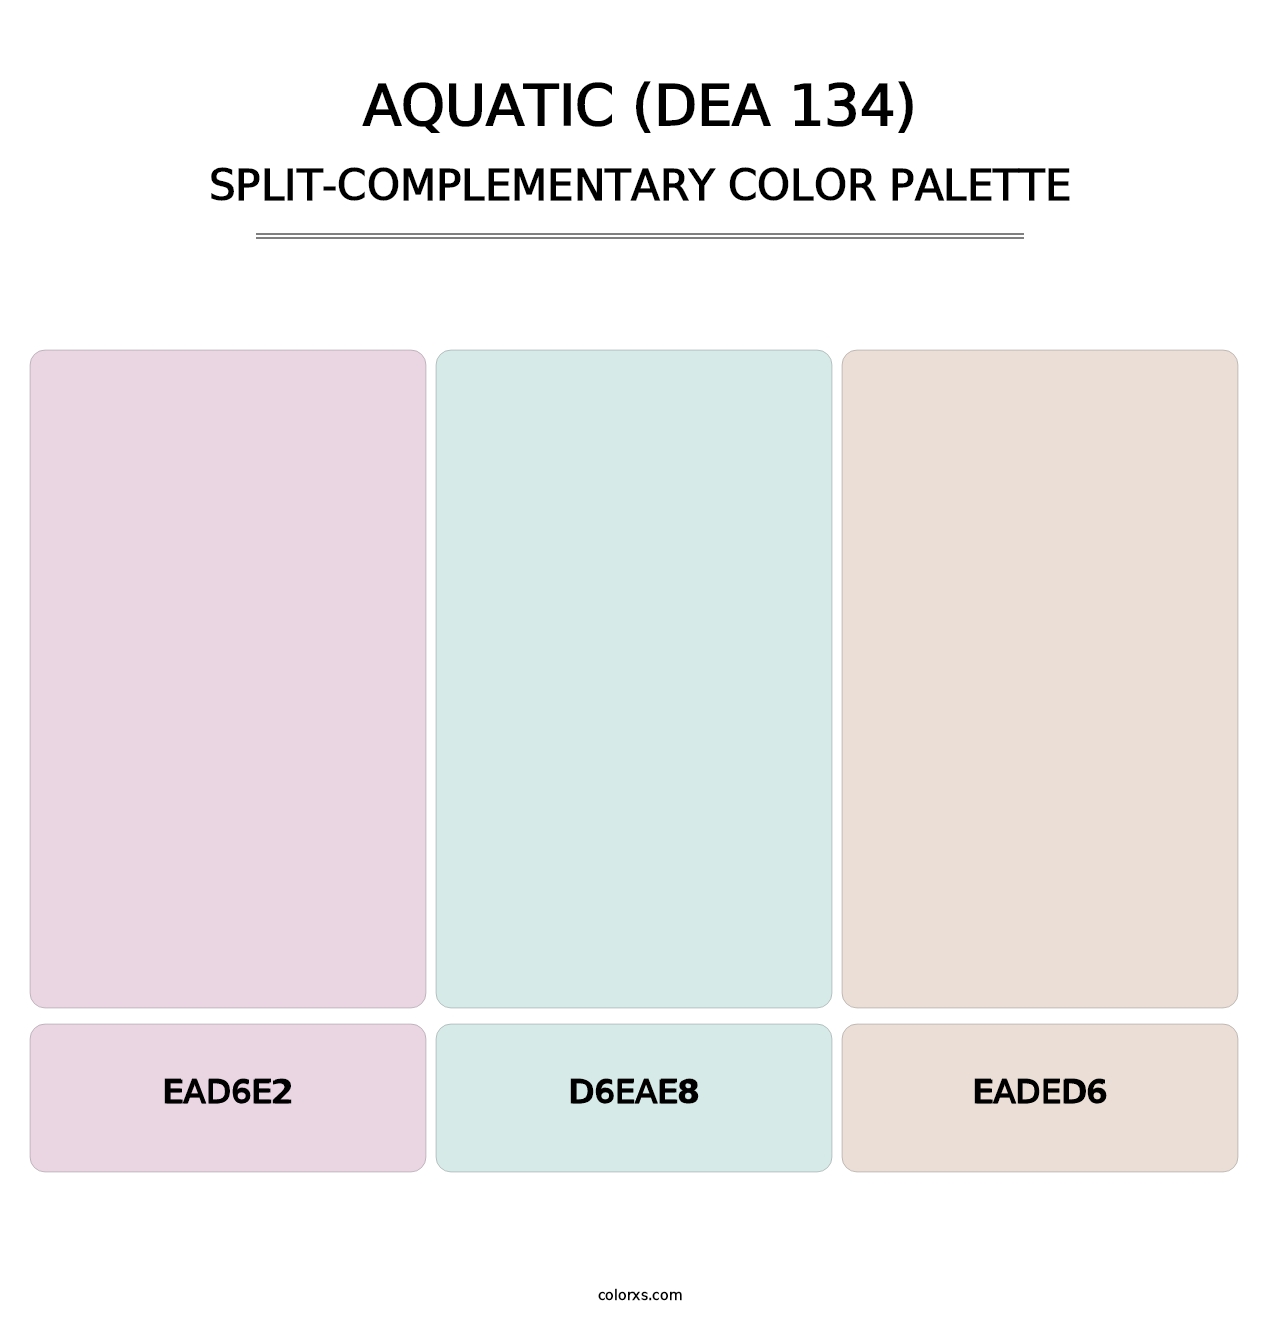 Aquatic (DEA 134) - Split-Complementary Color Palette